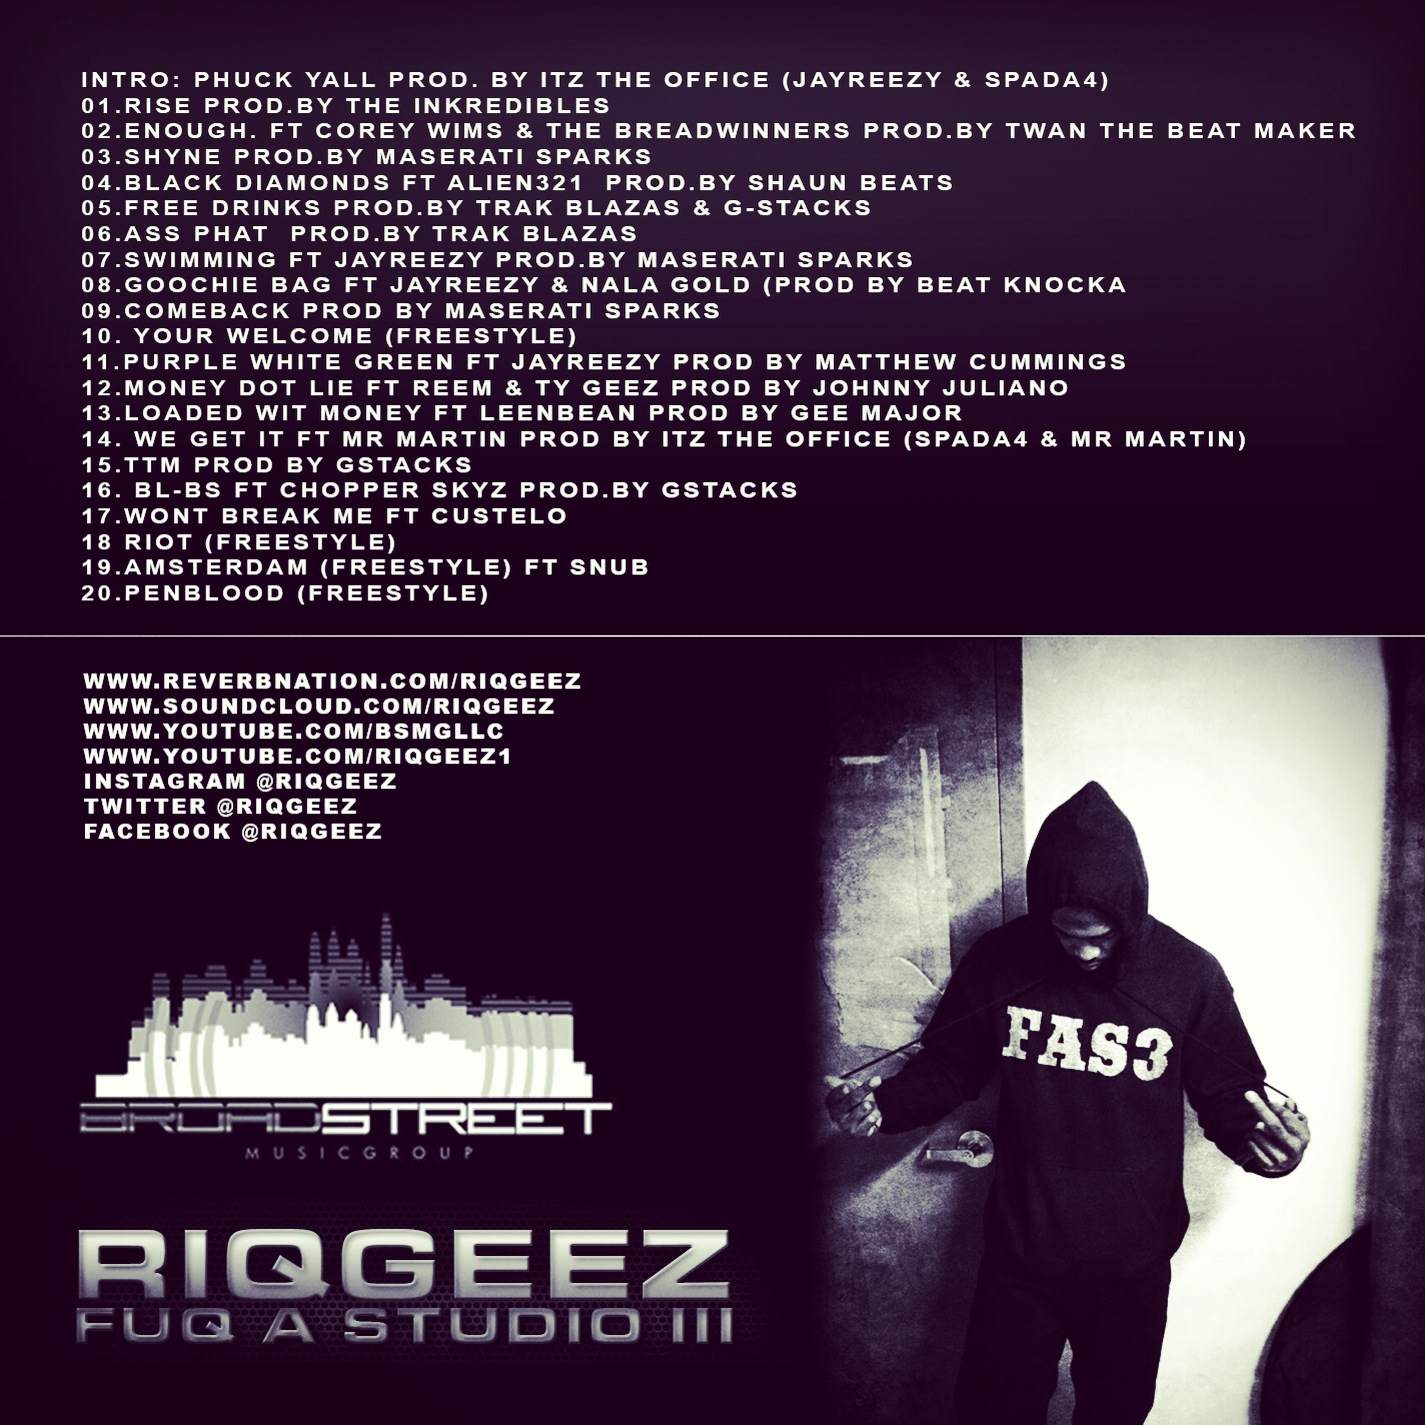 riq-geez-fuq-a-studio-3-mixtape-tracklist-HHS1987-2013 Riq Geez (@RiqGeez) - Fuq A Studio 3 (Mixtape)  